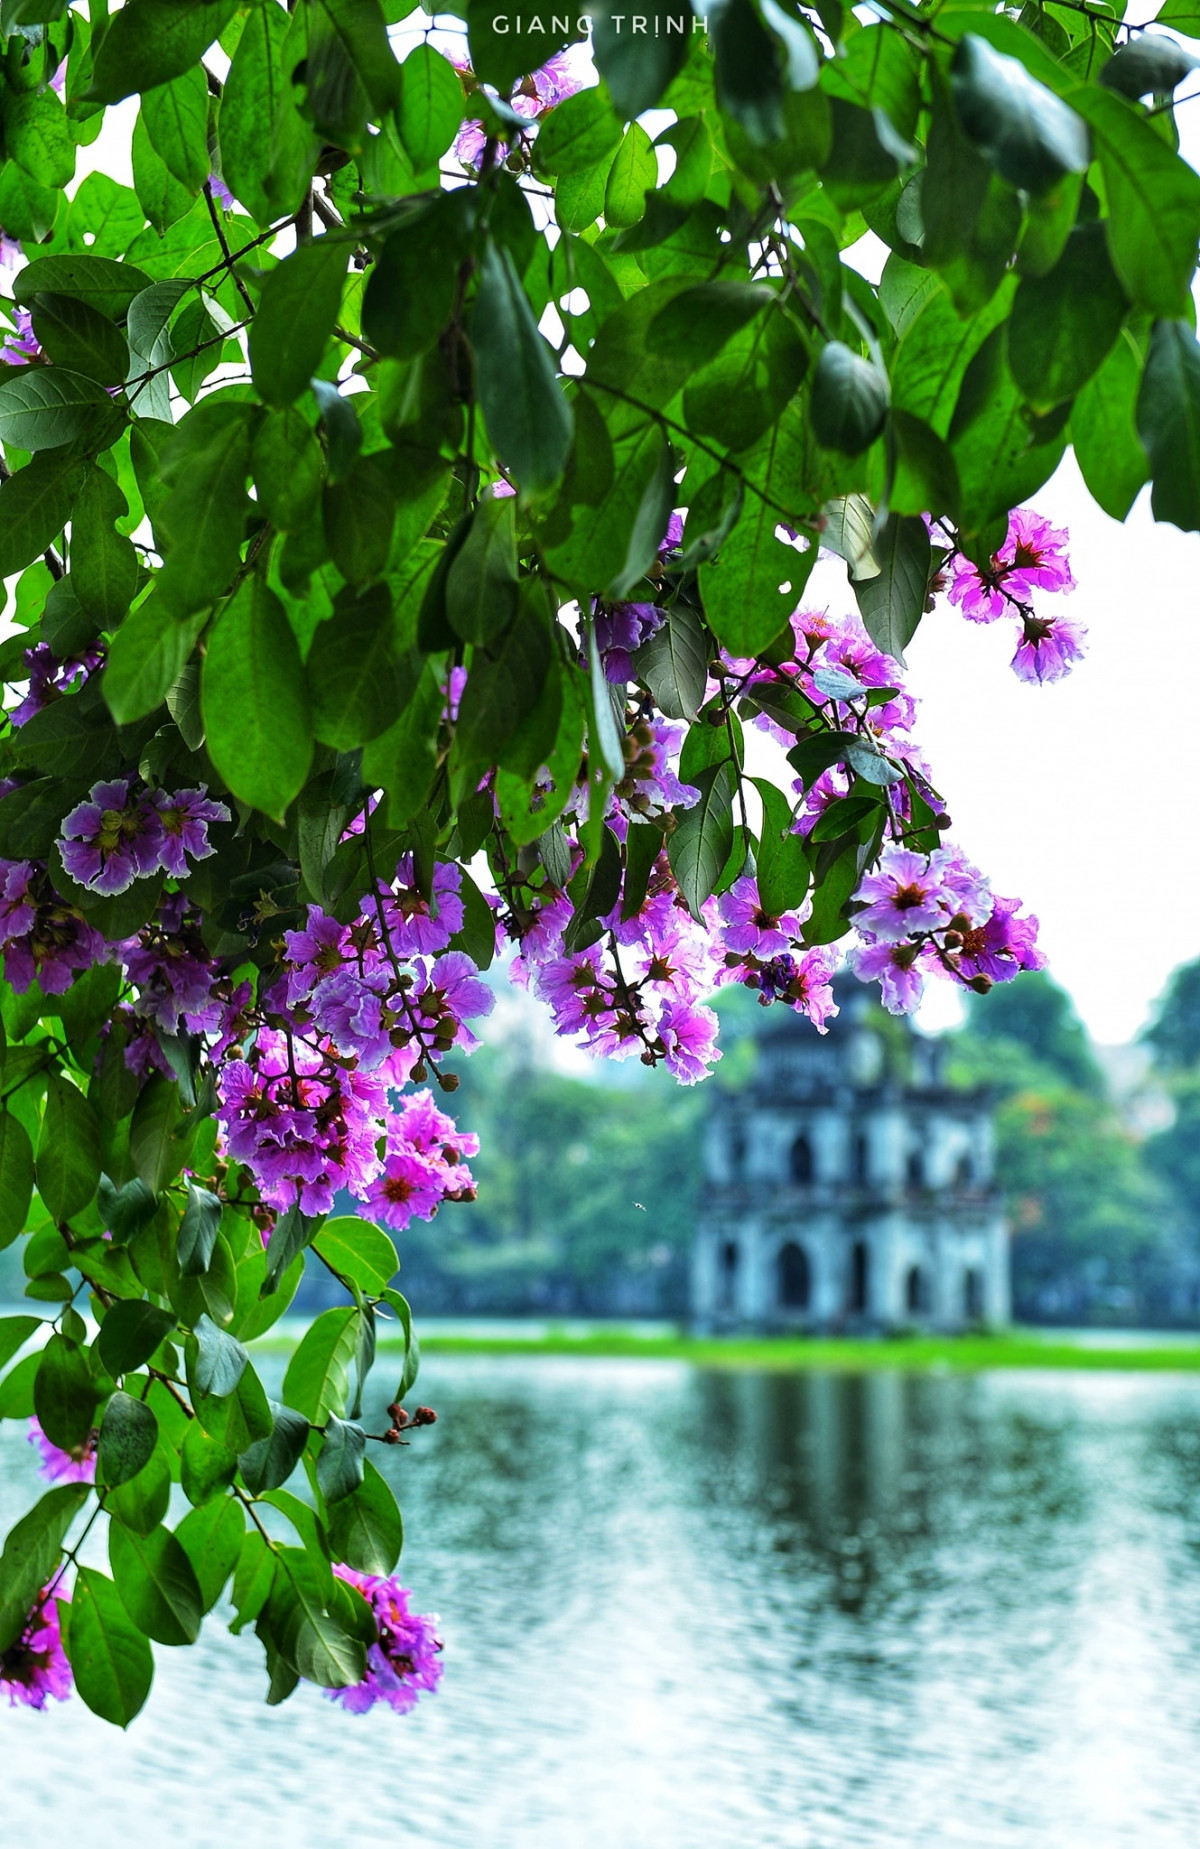 Hoa bằng lăng được trồng trên nhiều con phố ở Thủ đô Hà Nội.